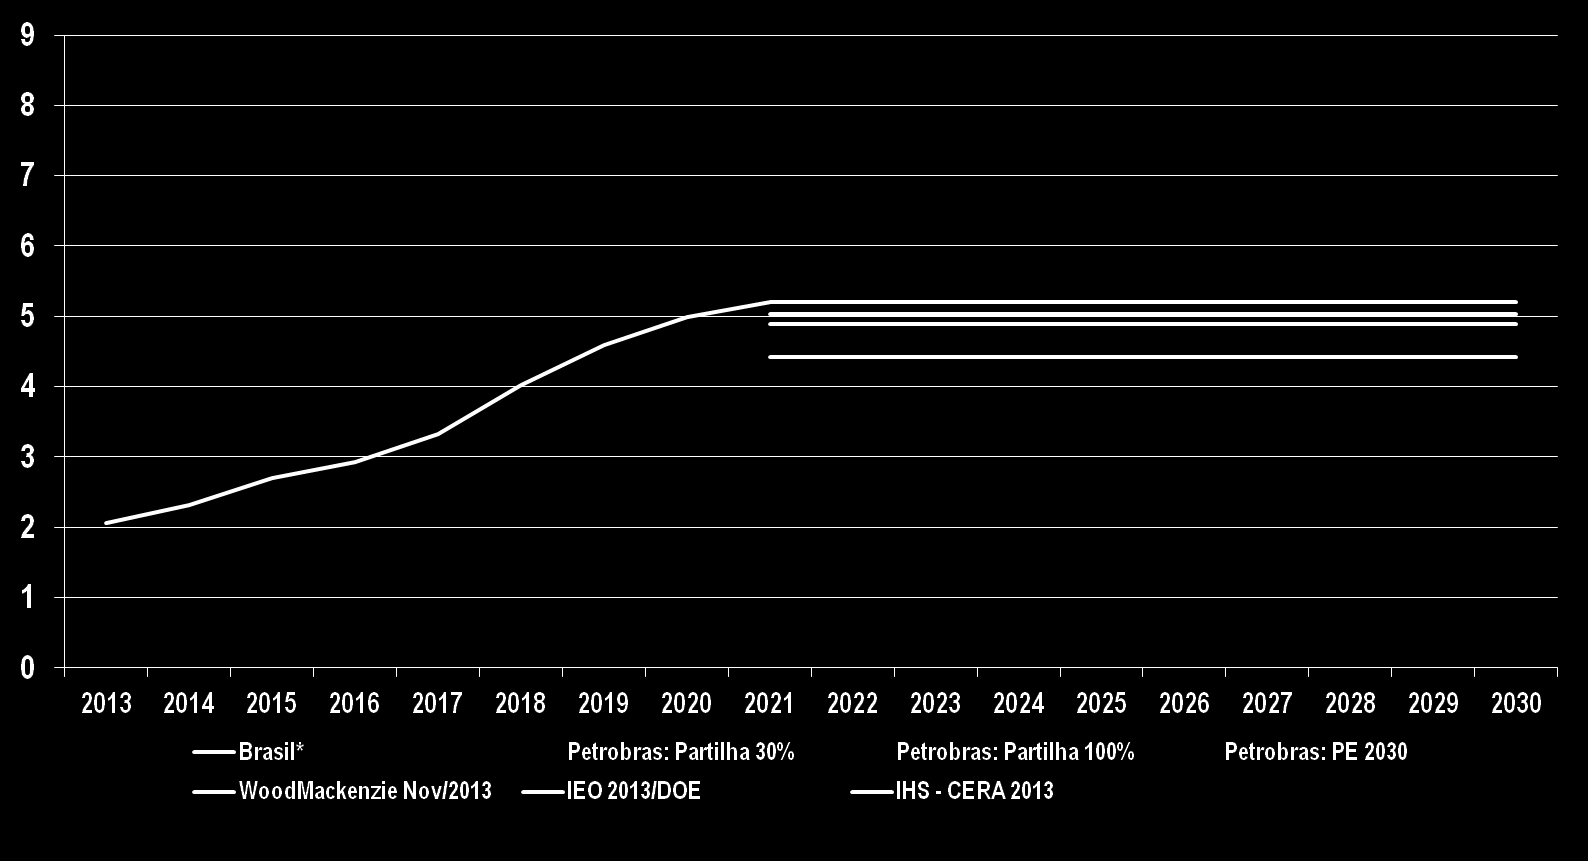 milhão bpd Cenários para a Produção de Óleo e LGN no Brasil Petrobras e Previsores: 2013, 2020 a 2035 Em 2035, segundo previsores, a produção de petróleo do Brasil variará de 4,7 a 6,6 milhões de